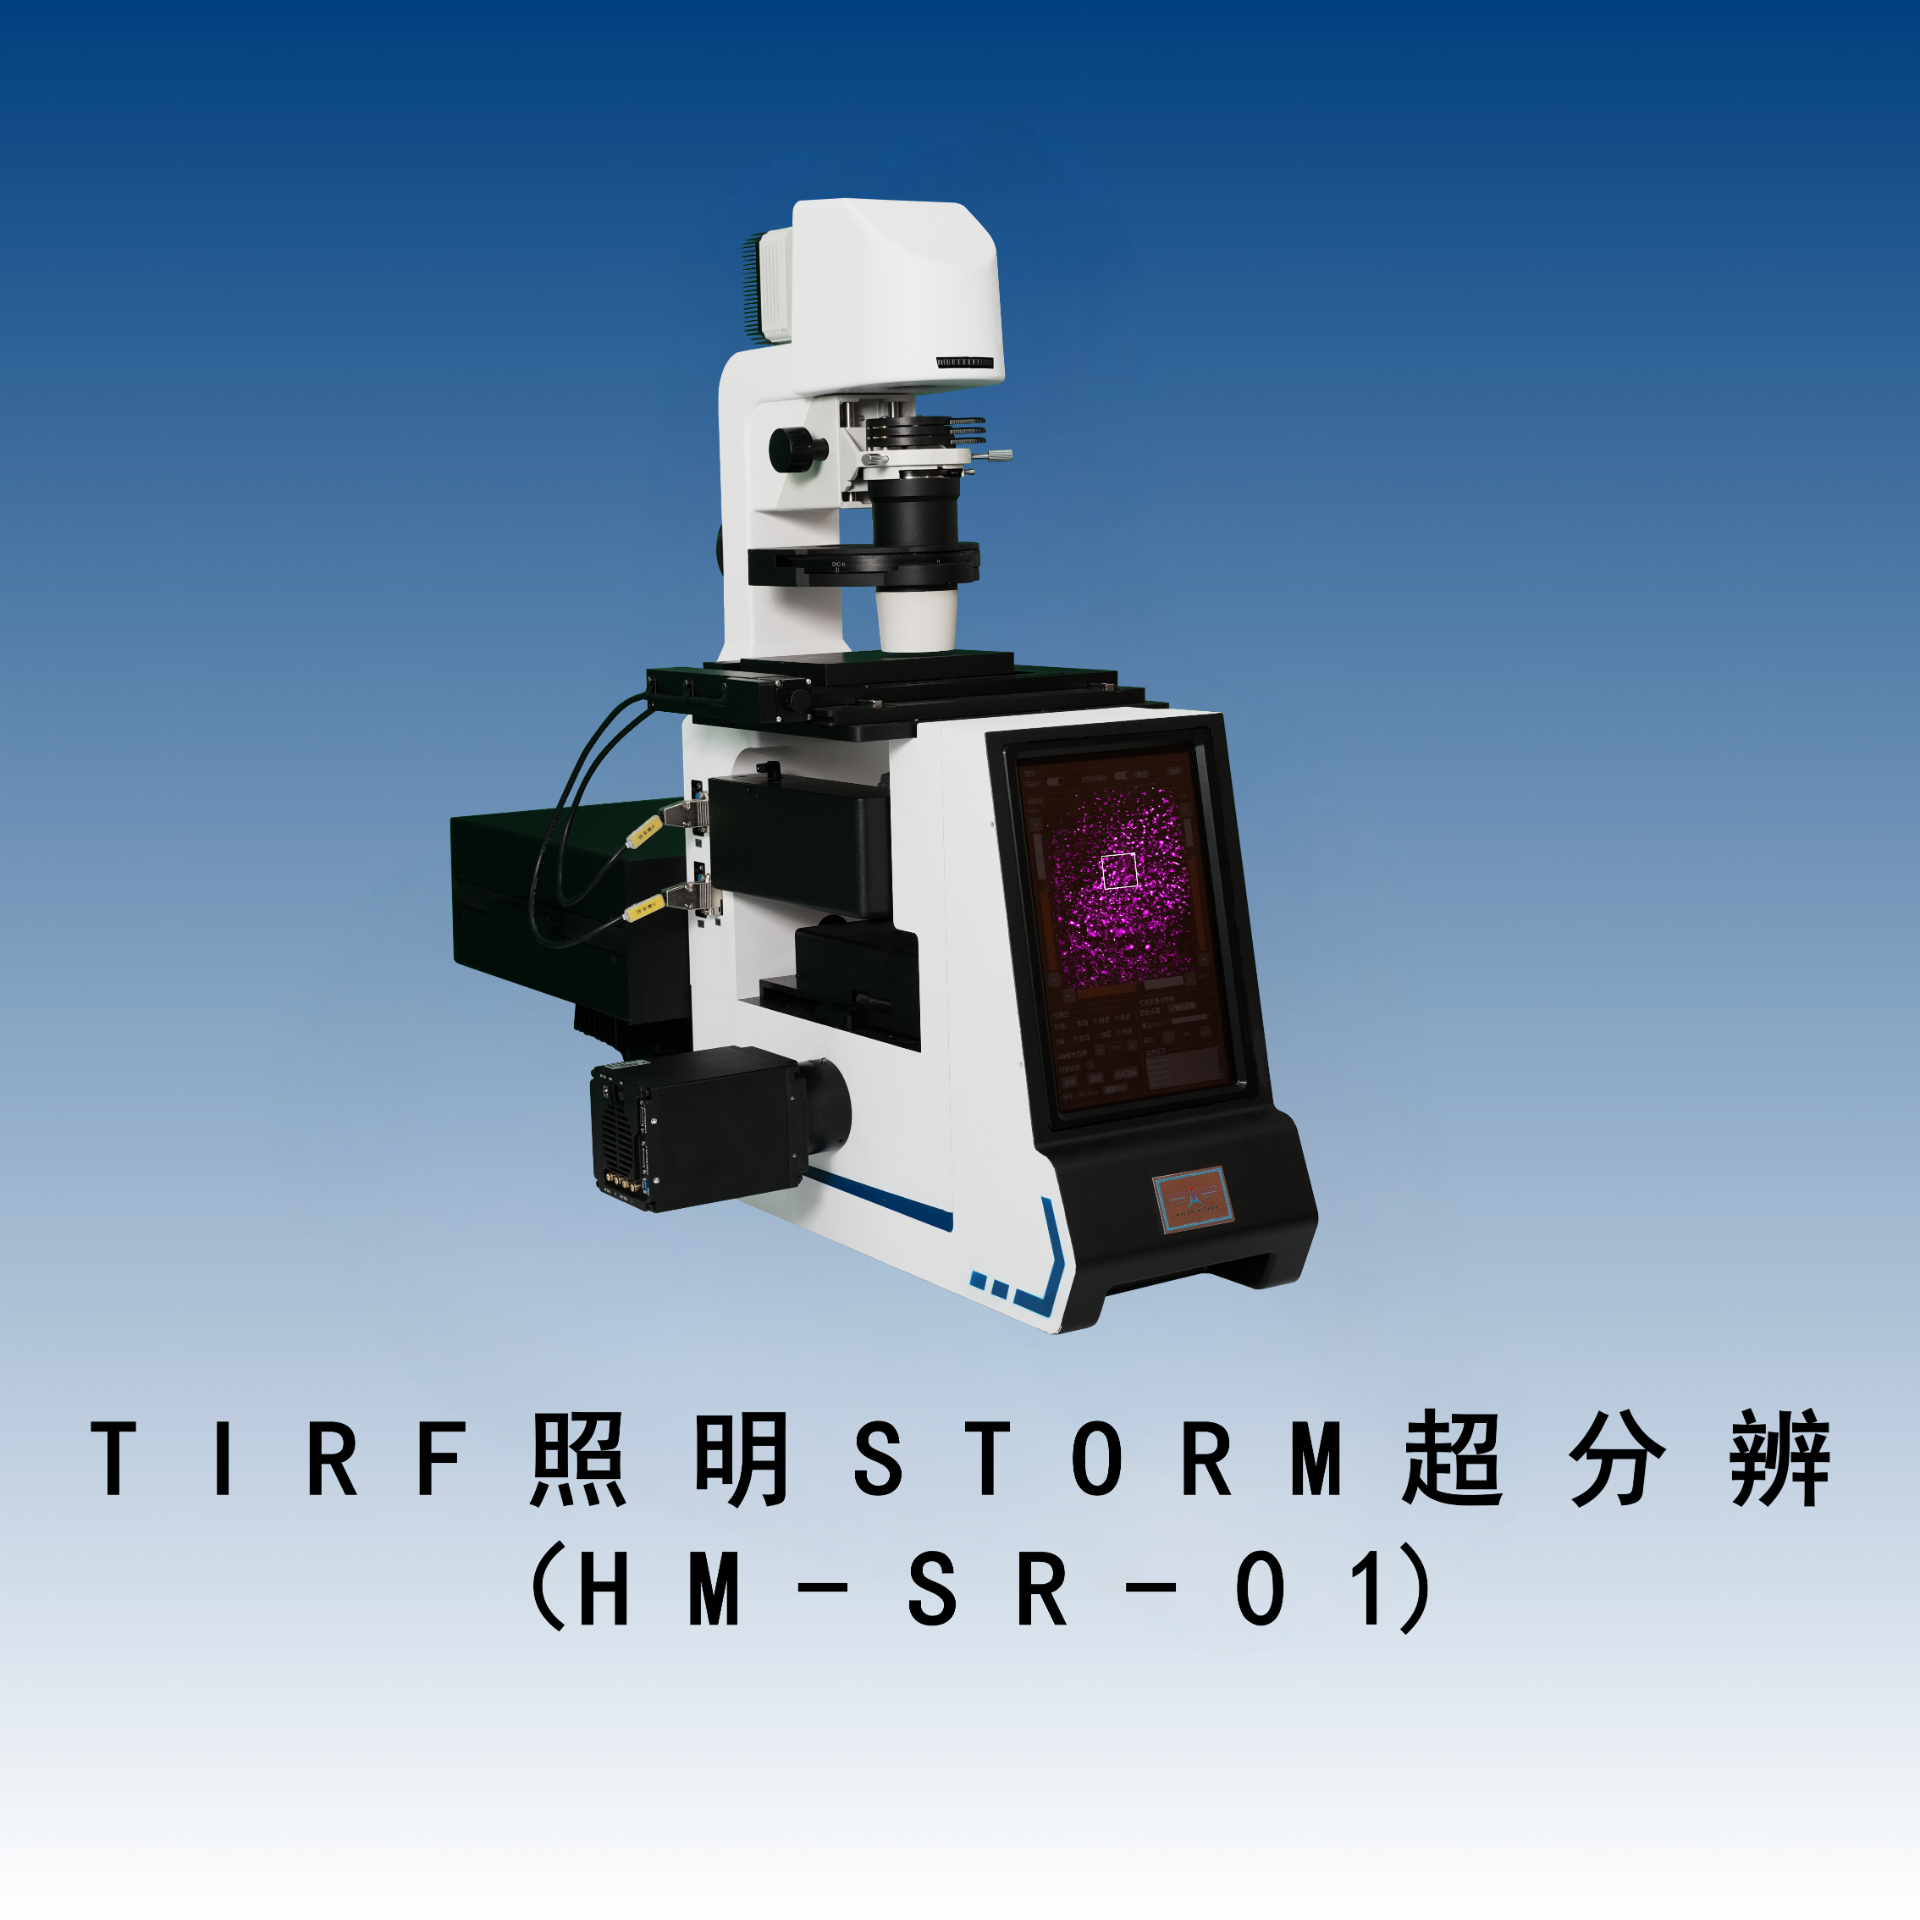 TIRF照明STORM超分辨显微镜（HM-SR-01）